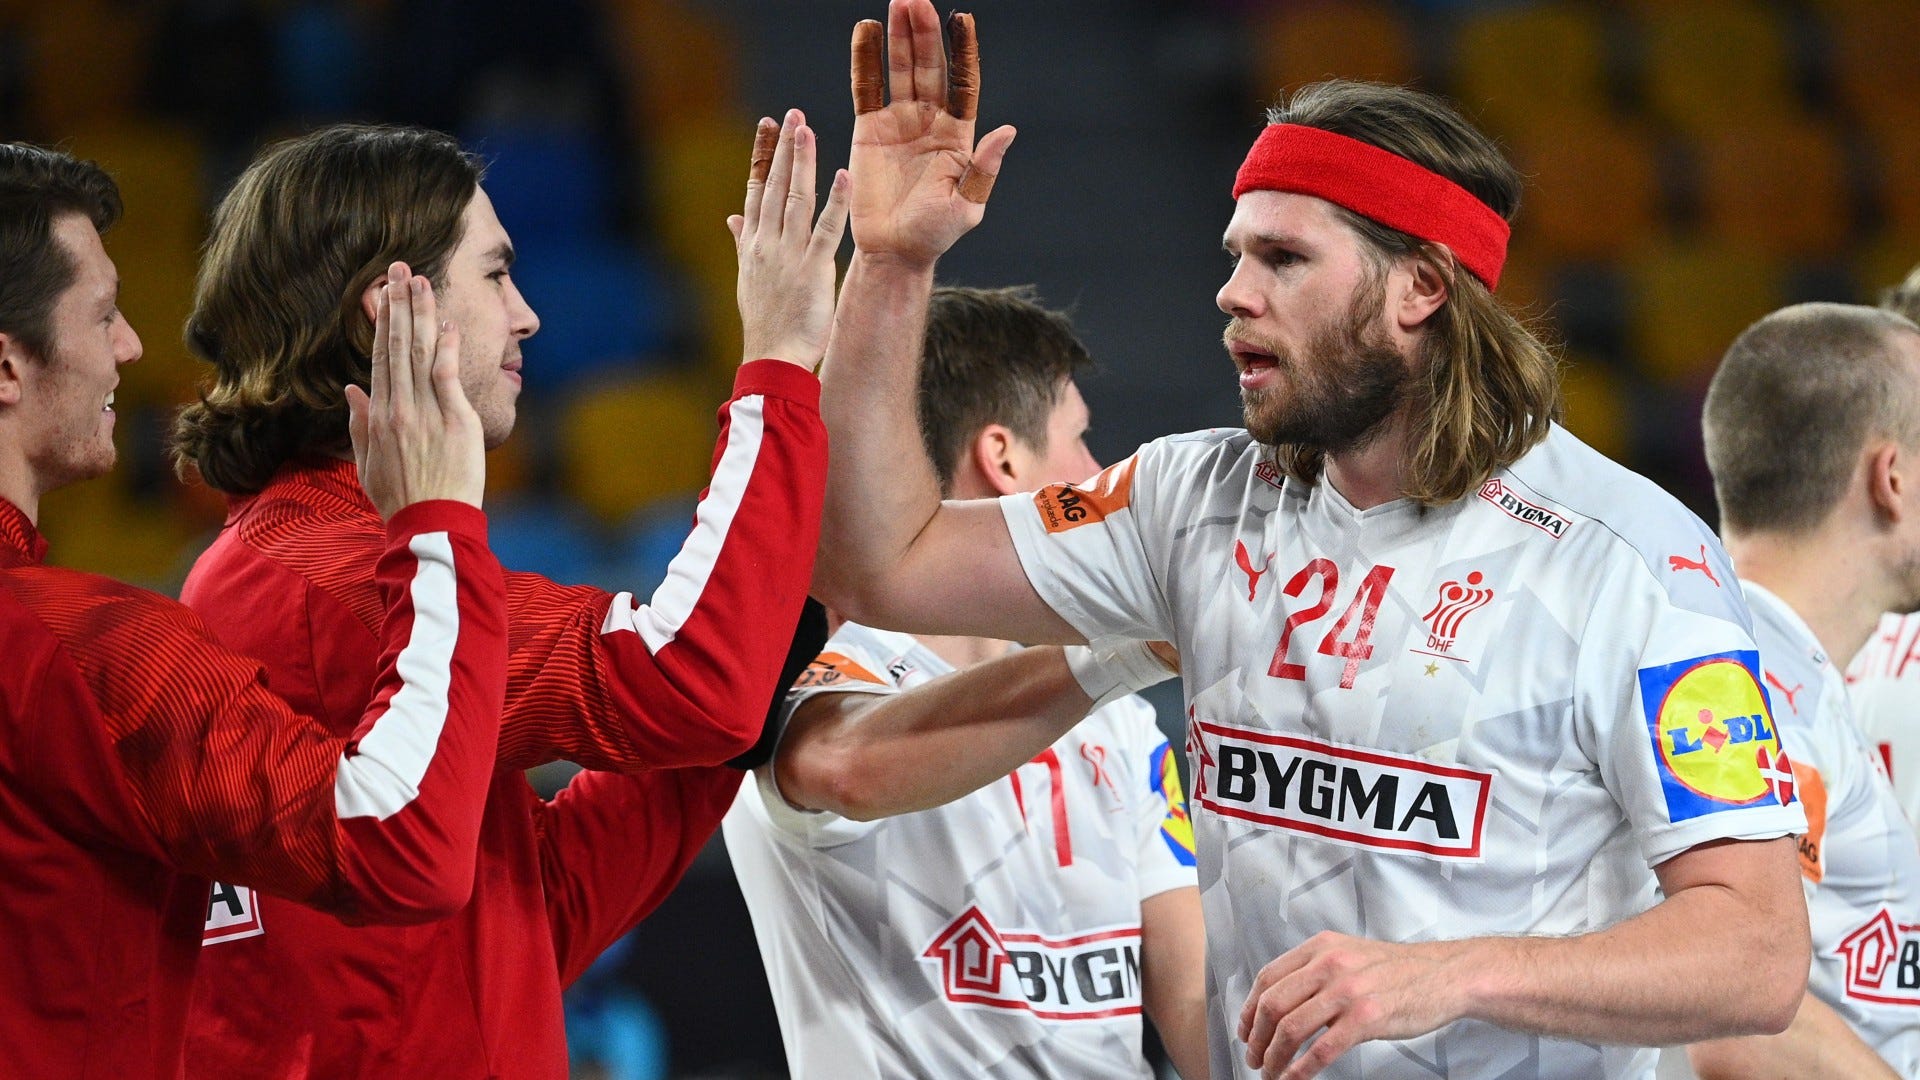 Finale der Handball-WM Dänemark gegen Schweden heute live im TV und im LIVE-STREAM sehen Goal Deutschland